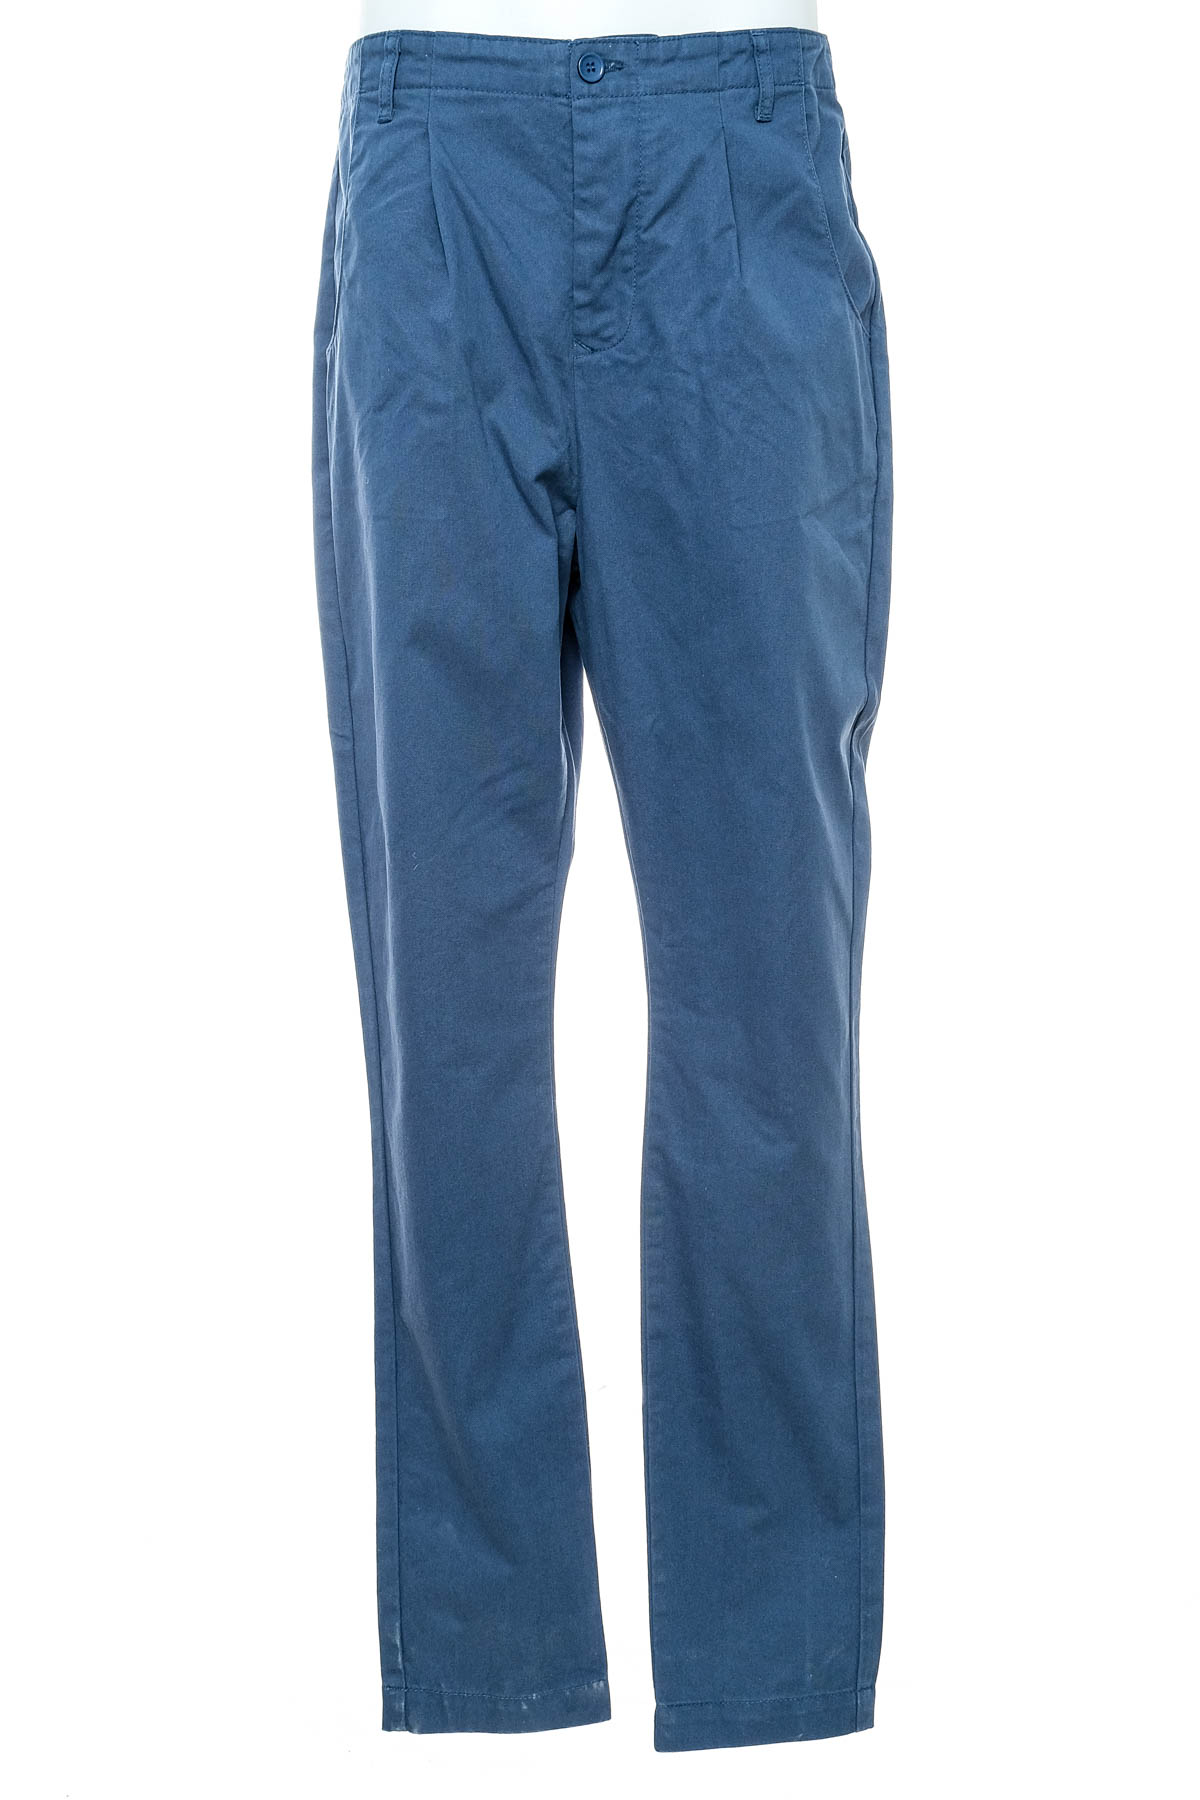 Men's trousers - Asos - 0